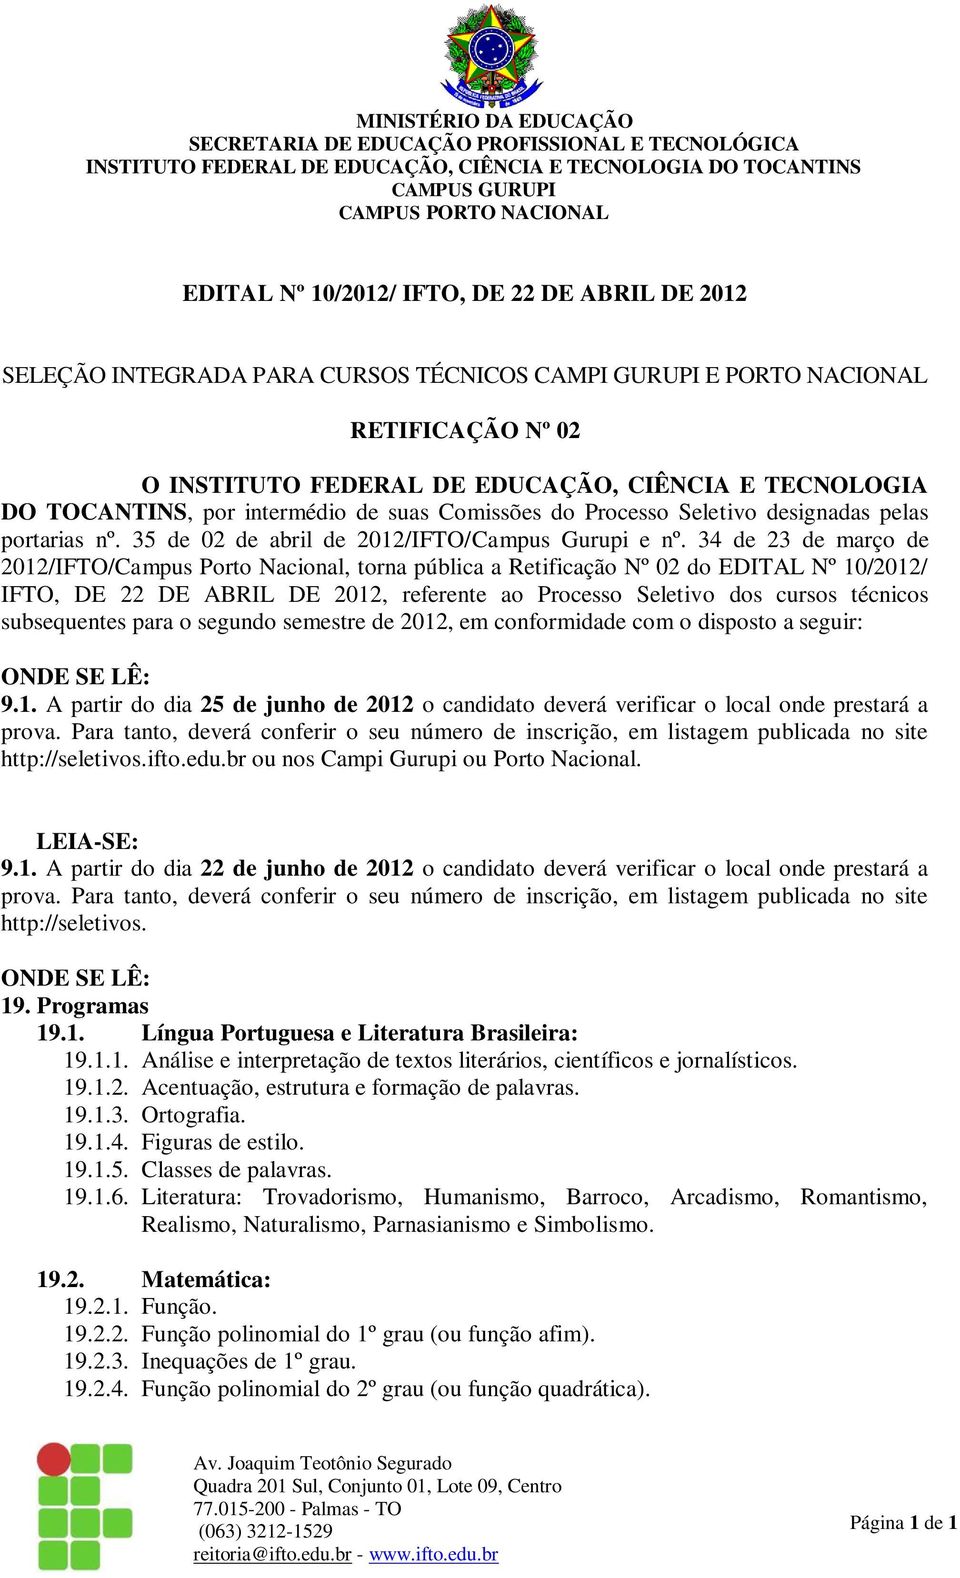 34 de 23 de março de 2012/IFTO/Campus Porto Nacional, torna pública a Retificação Nº 02 do EDITAL Nº 10/2012/ IFTO, DE 22 DE ABRIL DE 2012, referente ao Processo Seletivo dos cursos técnicos